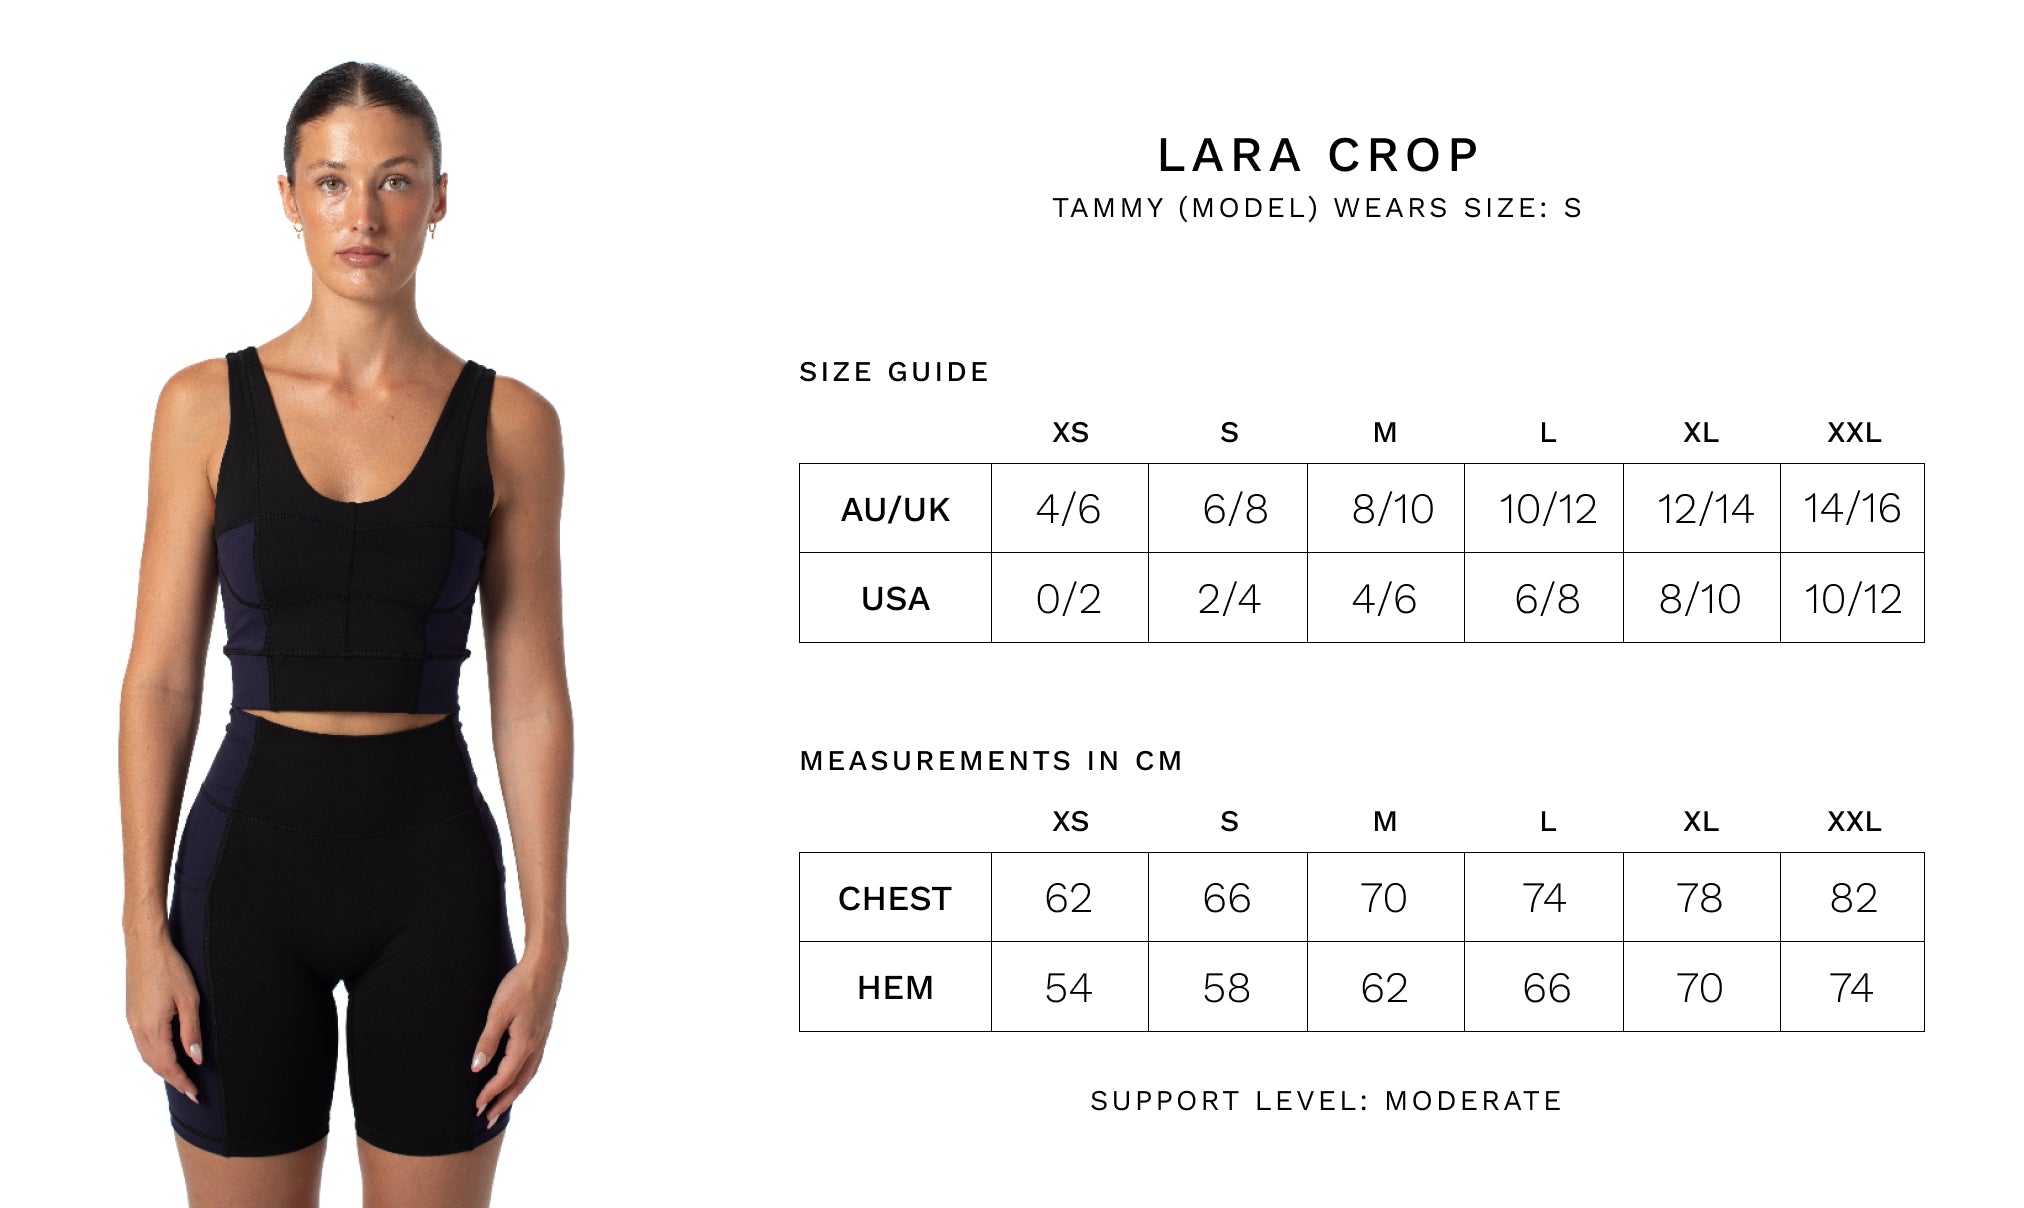 LARA CROP - Size Guide